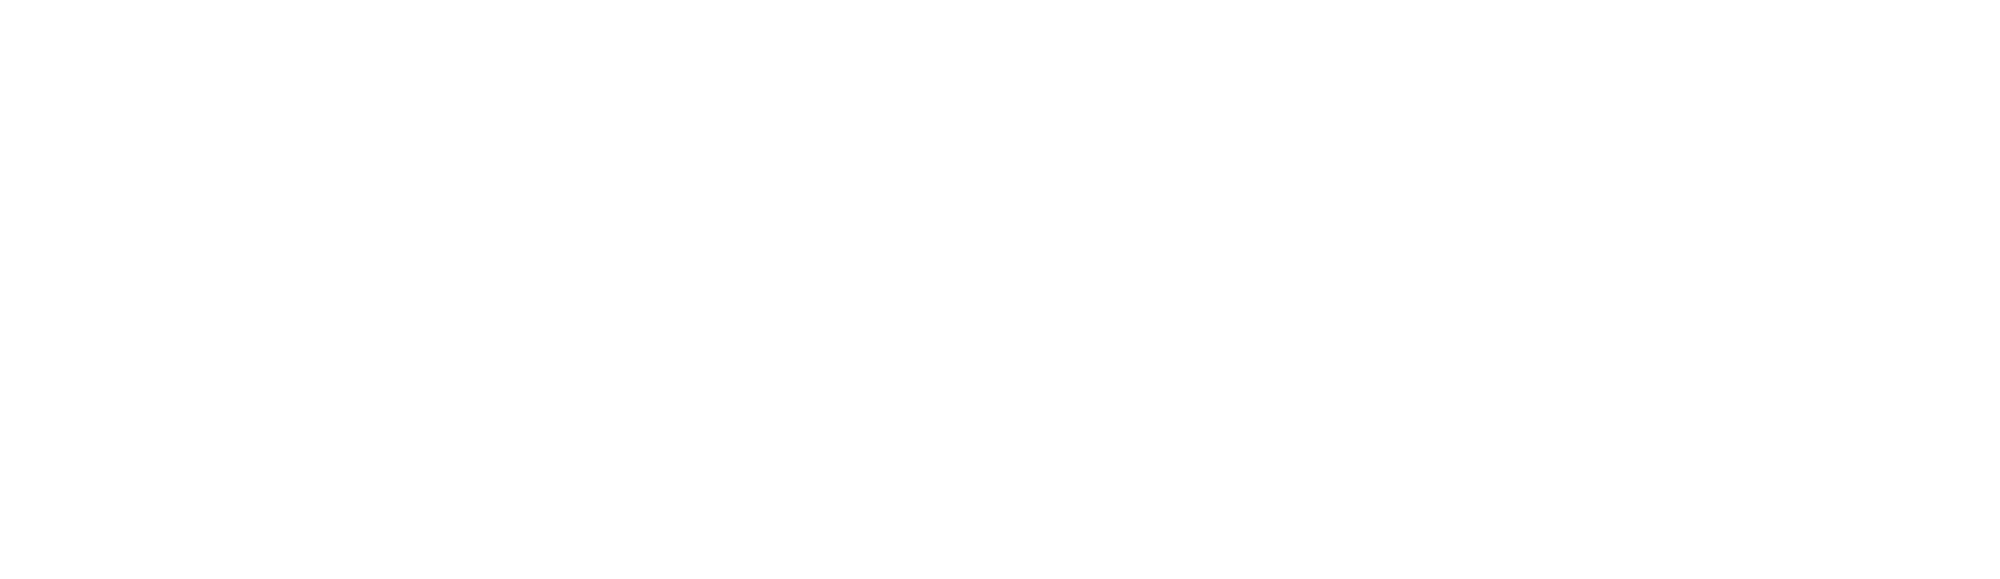 Final Fantasy Logo PNG Background Image